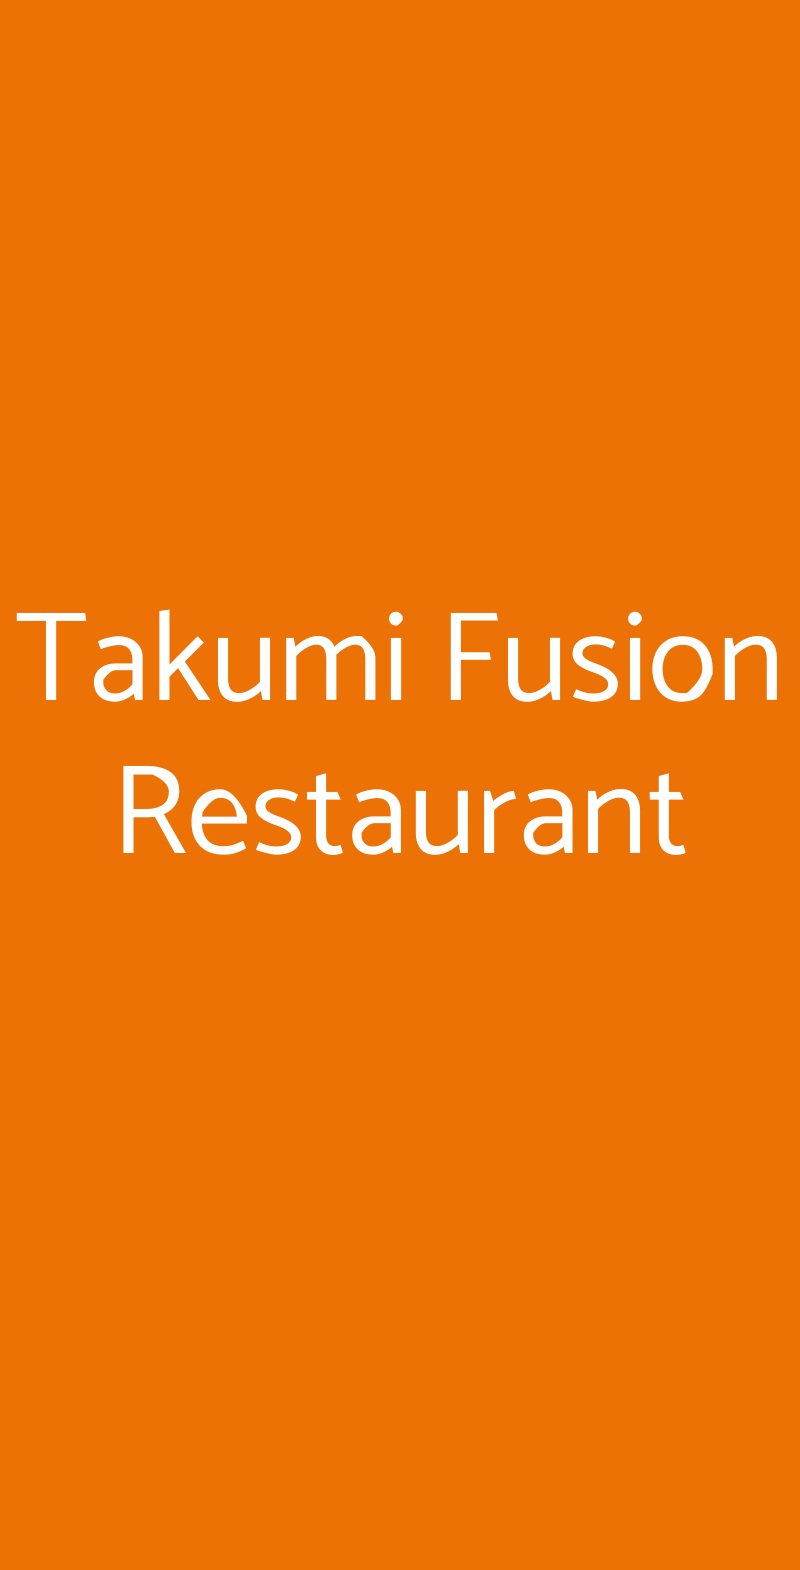 Takumi Fusion Restaurant Milano menù 1 pagina